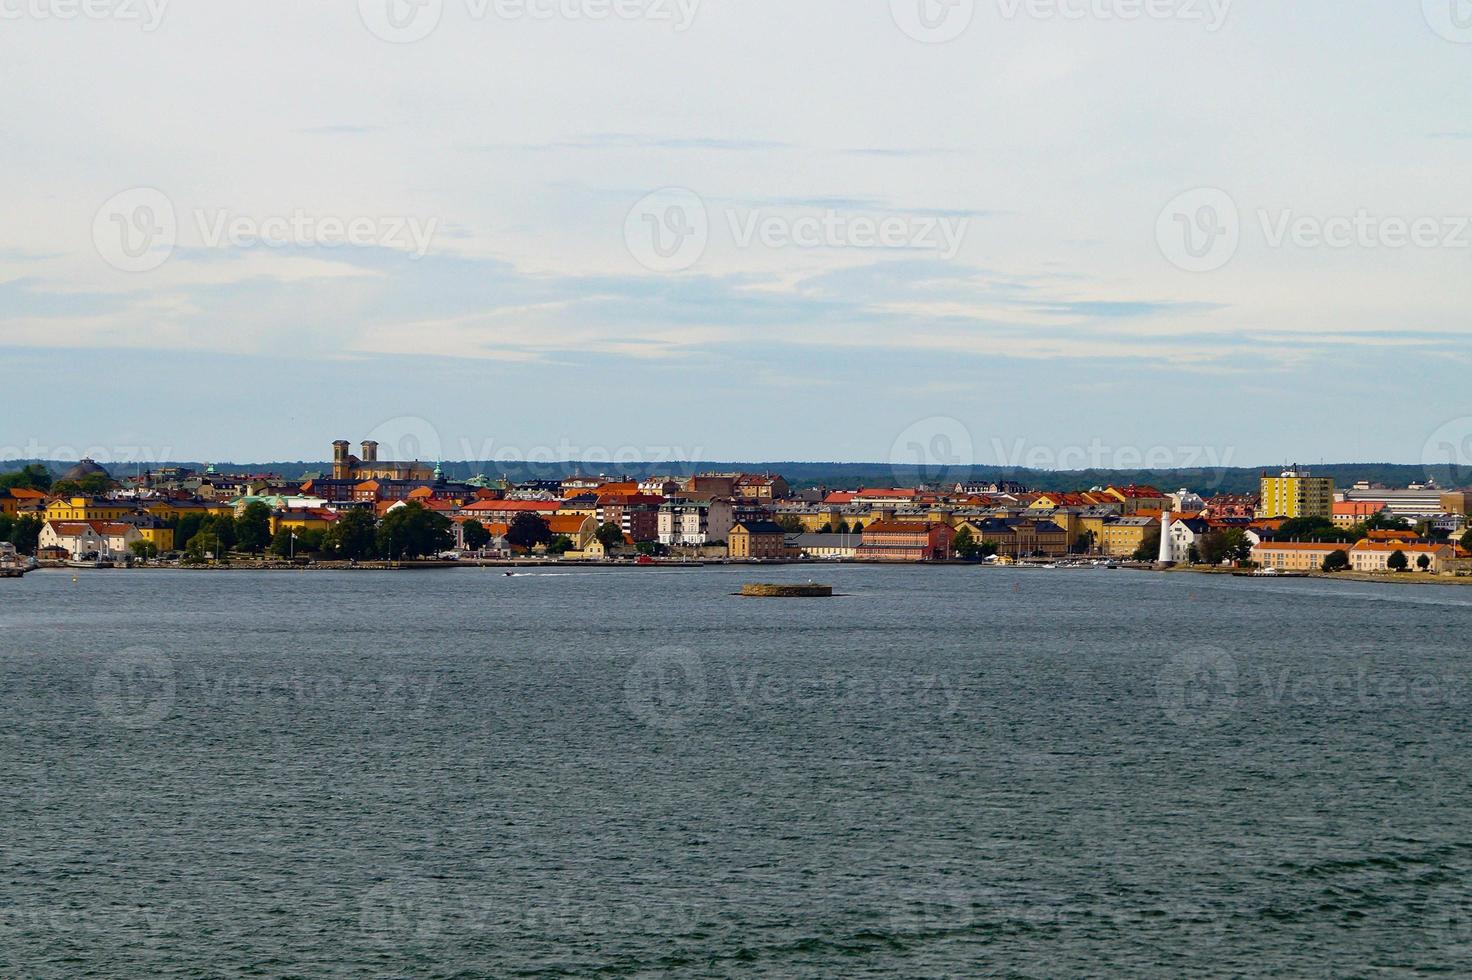 Karlskrona est une ville portuaire dans la province suédoise du sud de Blekinge photo